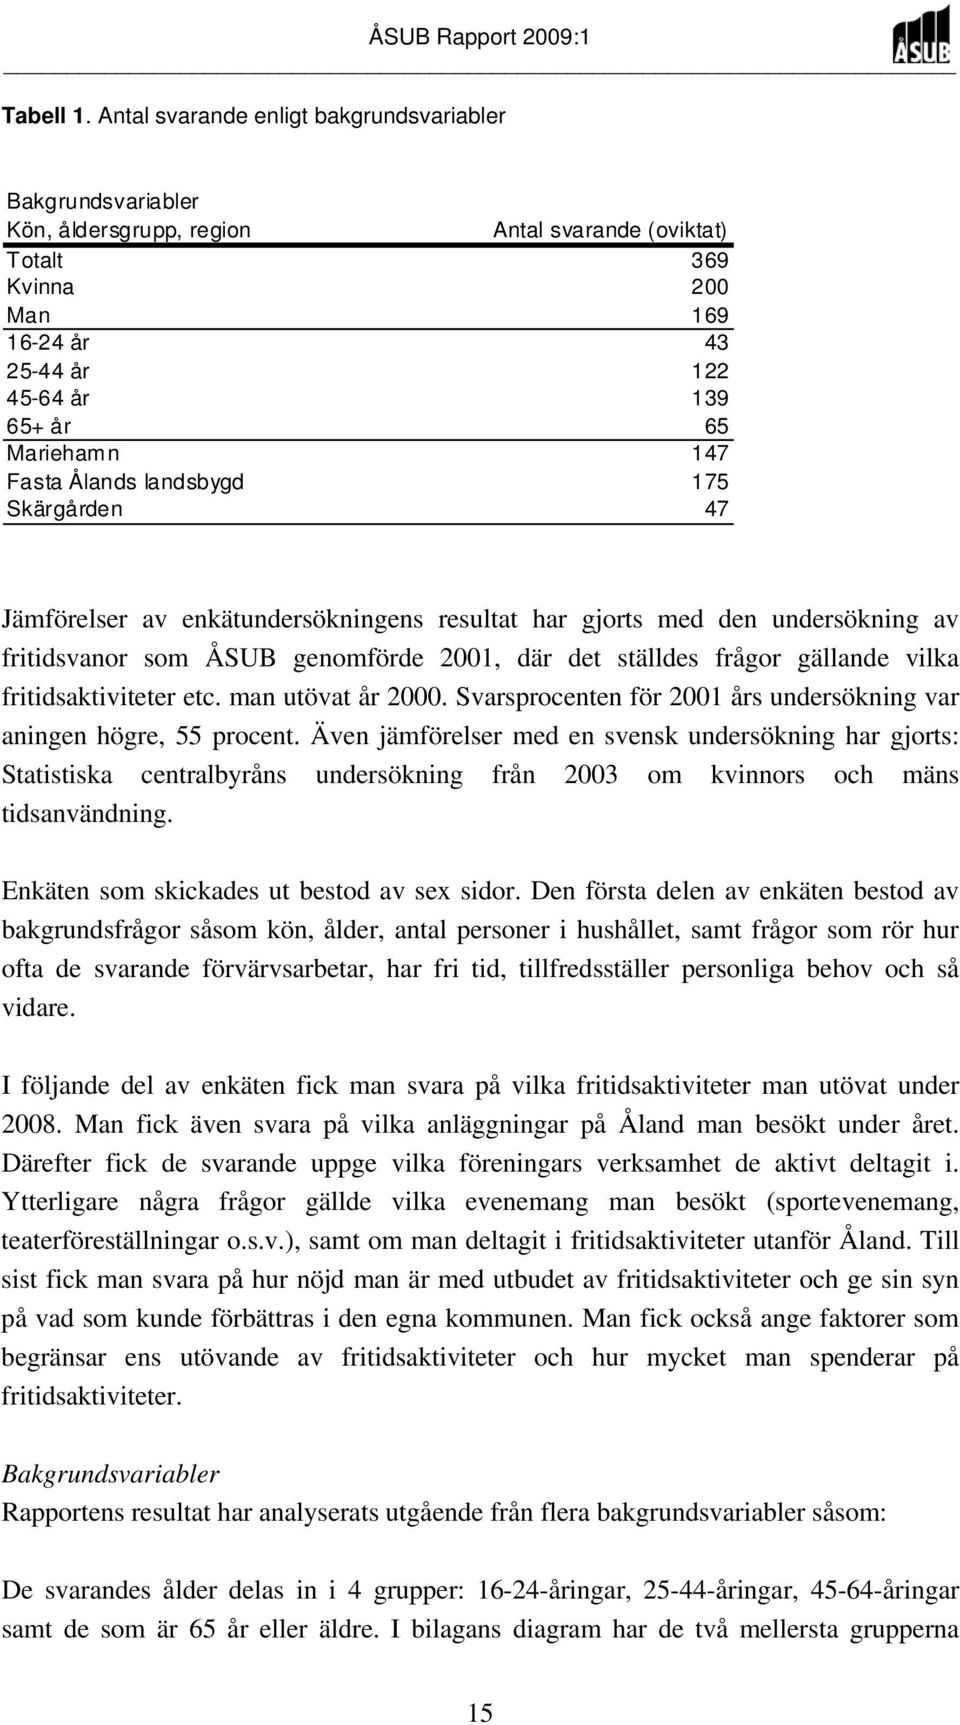 147 Fasta Ålands landsbygd 175 Skärgården 47 Jämförelser av enkätundersökningens resultat har gjorts med den undersökning av fritidsvanor som ÅSUB genomförde 2001, där det ställdes frågor gällande